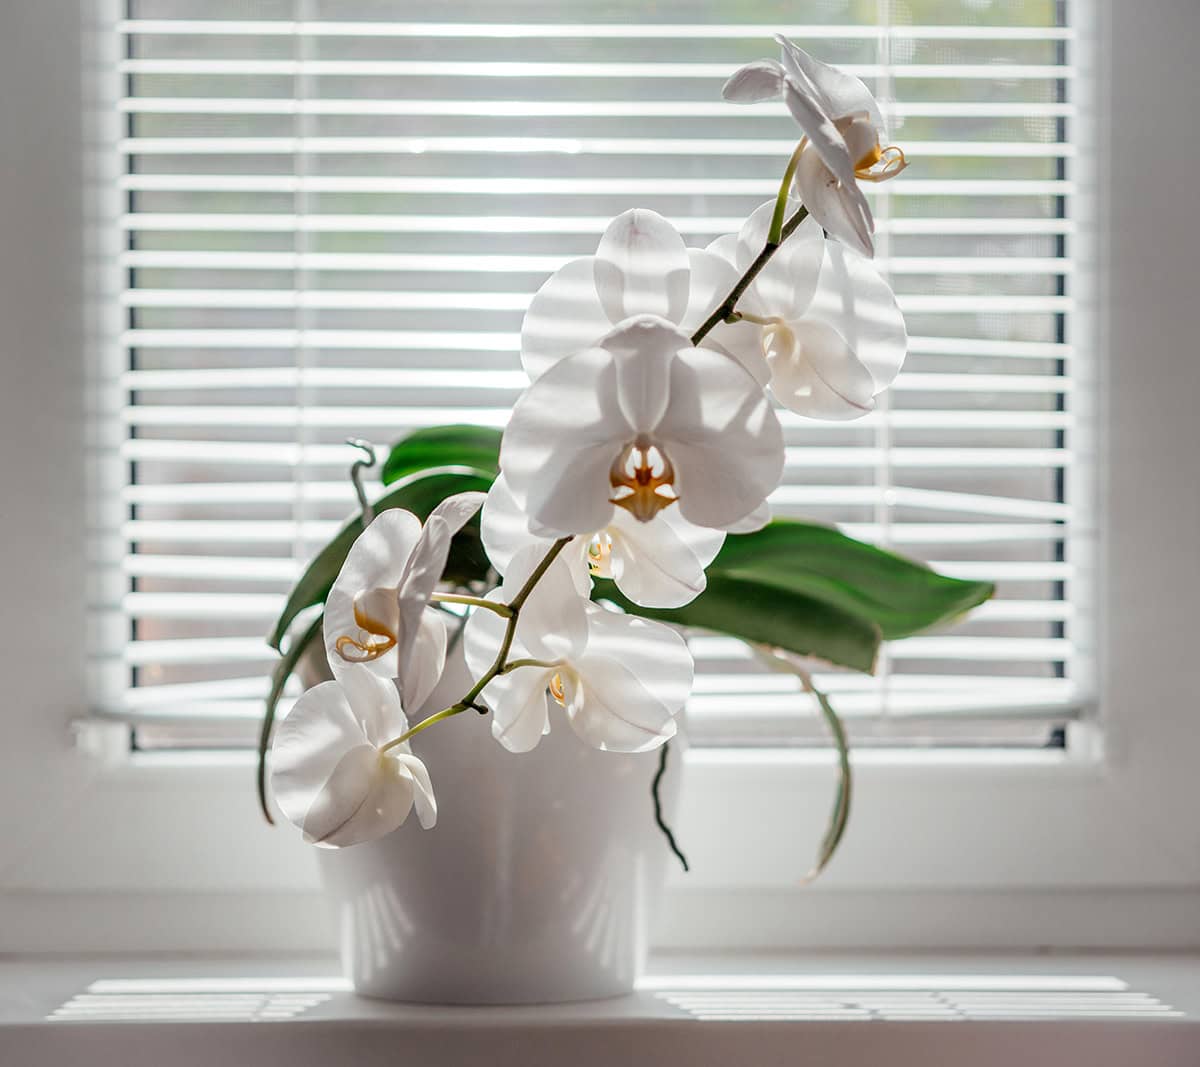 Orchids (Orchidaceae)